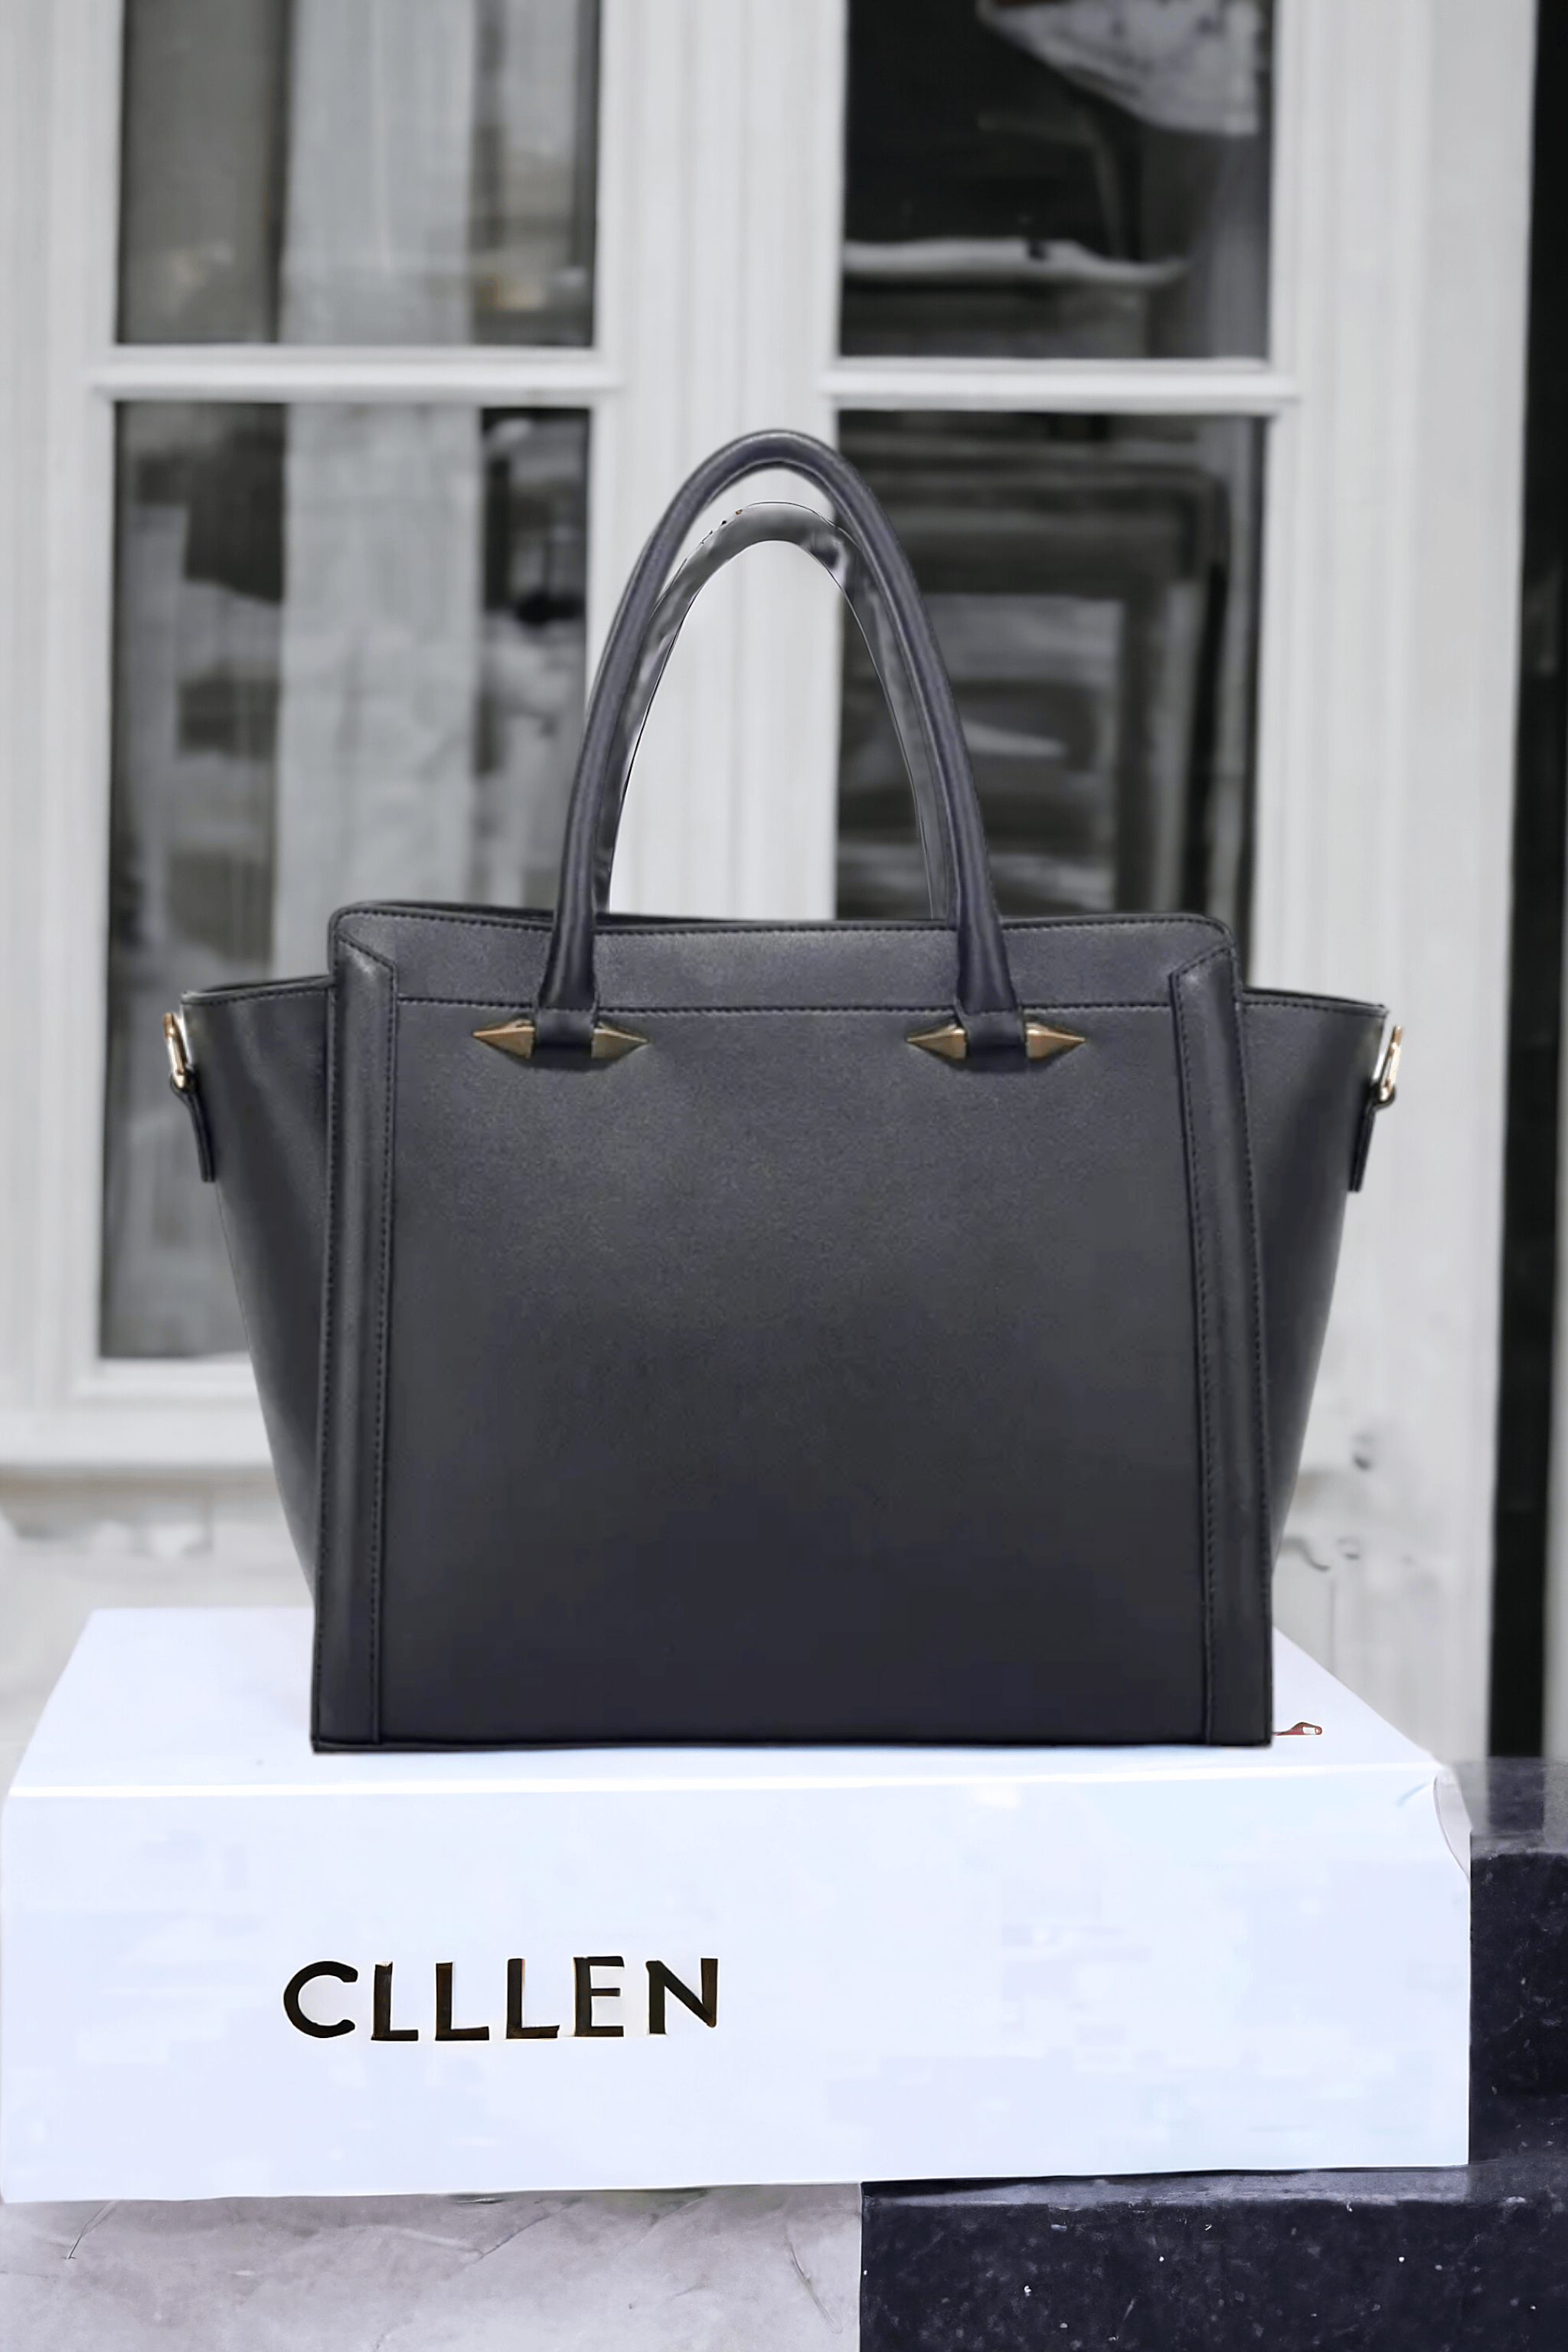 Black Leather Designed Handbag 350Gh¢